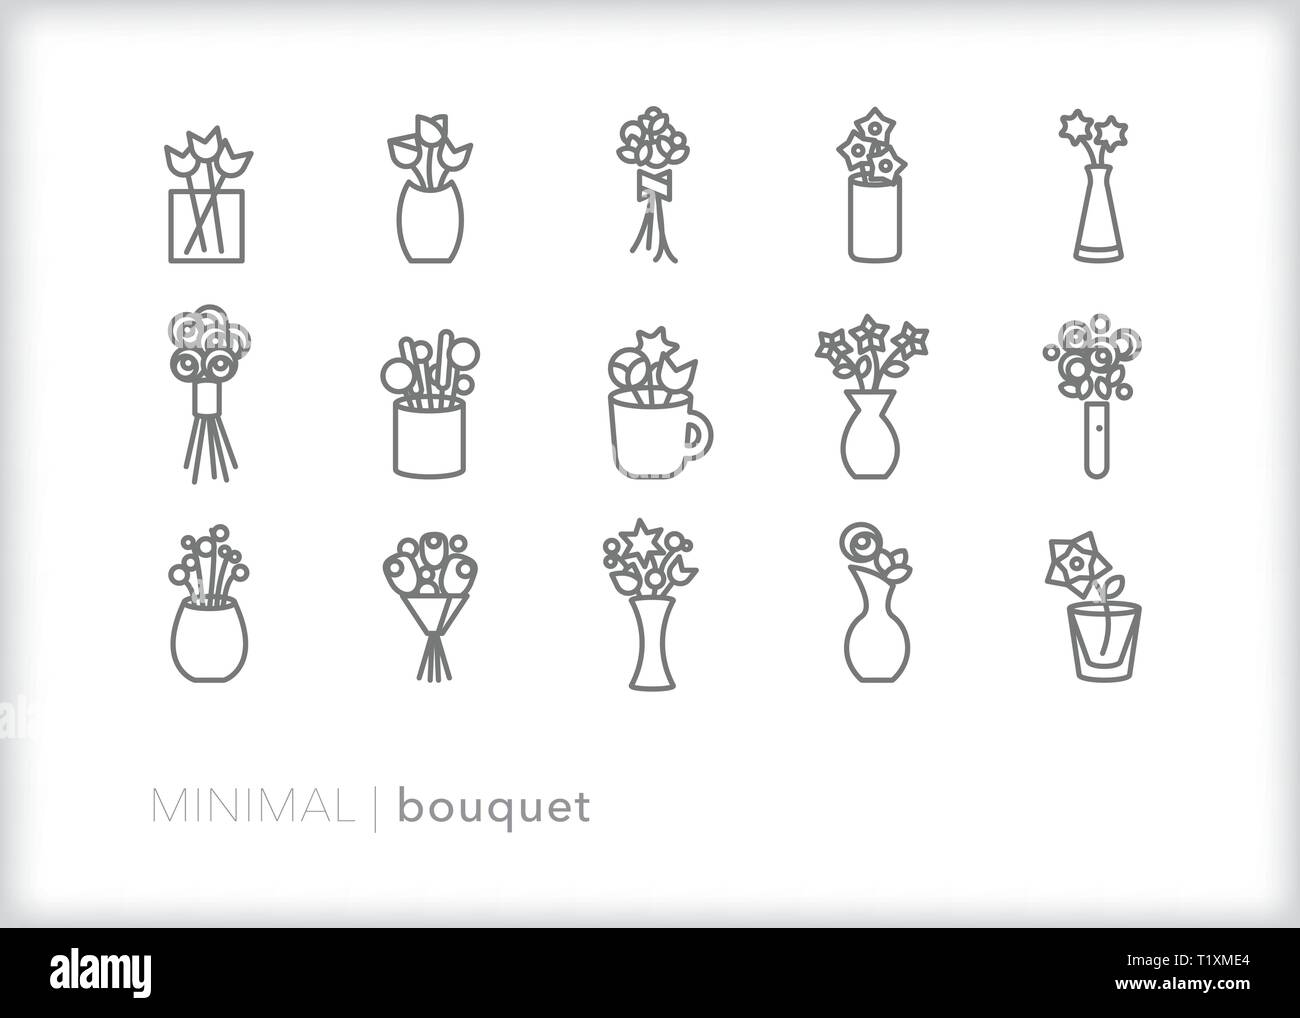 Satz von 15 flower bouquet Zeile für Symbole der Triebe, Knospen und Blüten in verschiedenen Vasen, Tassen und Packungen Stock Vektor